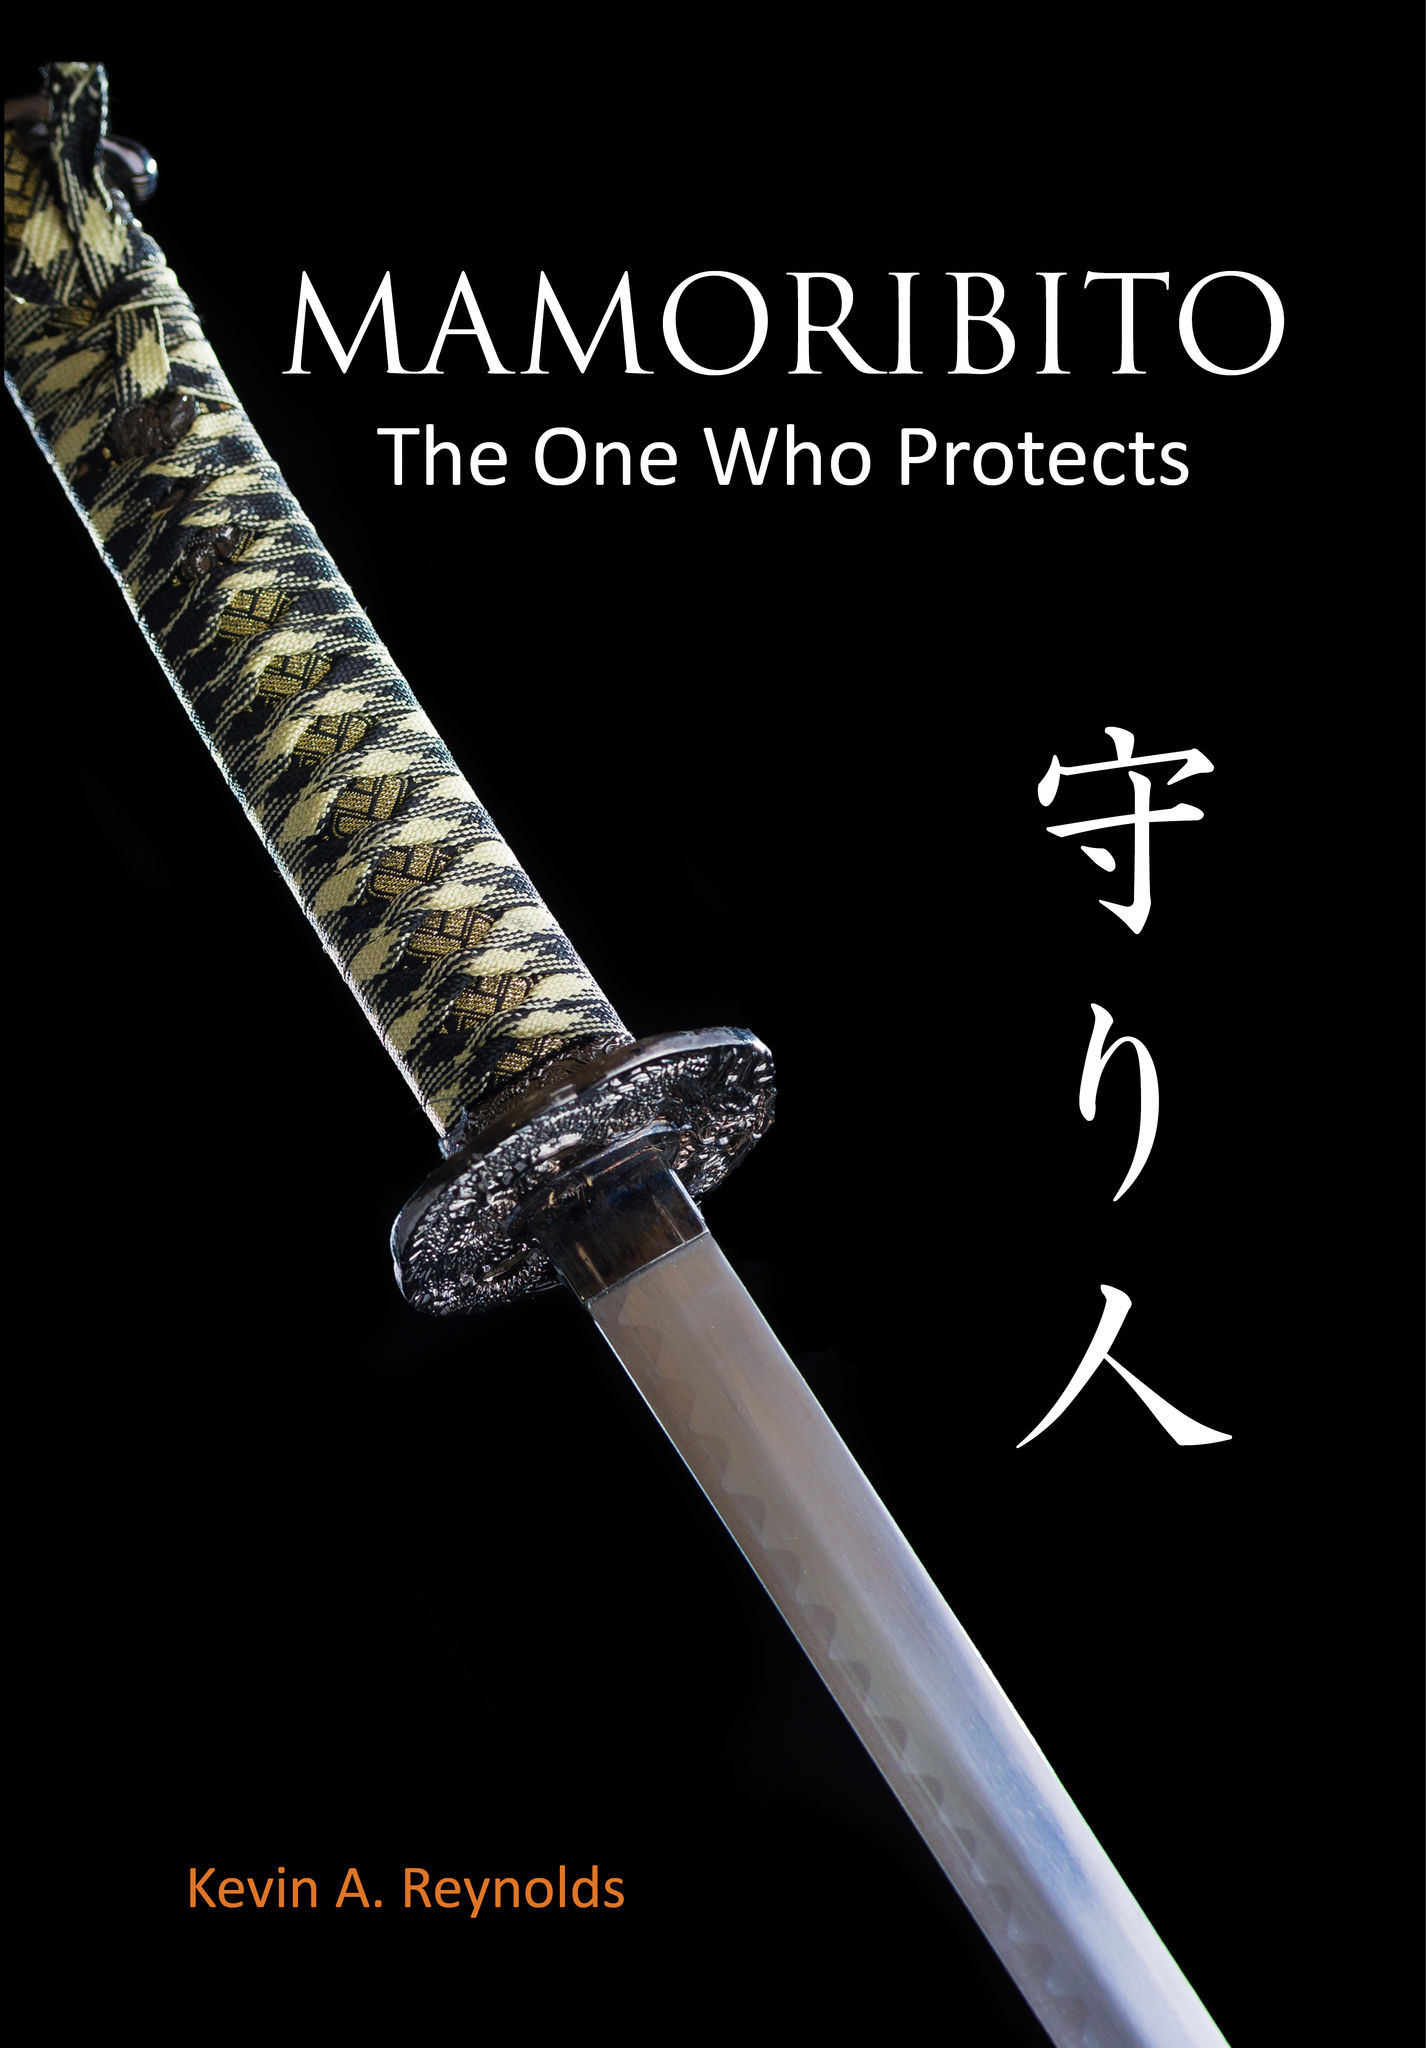 MAMORIBITO - THE ONE WHO PROTECTS